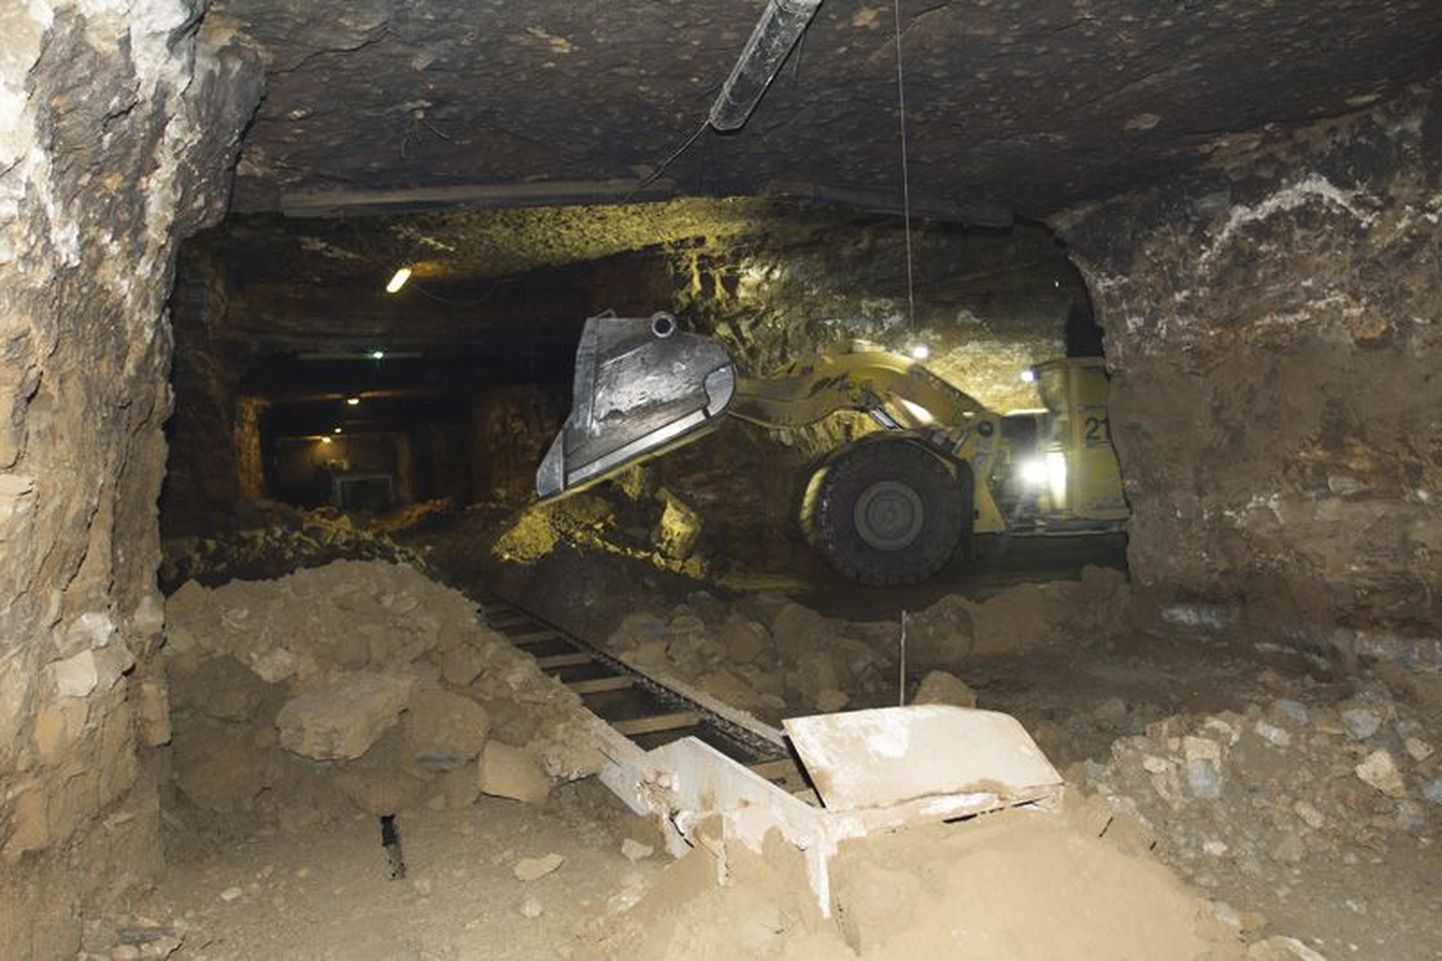 Ojamaa kaevandusest väljub põlevkivi konveierlinti mööda.